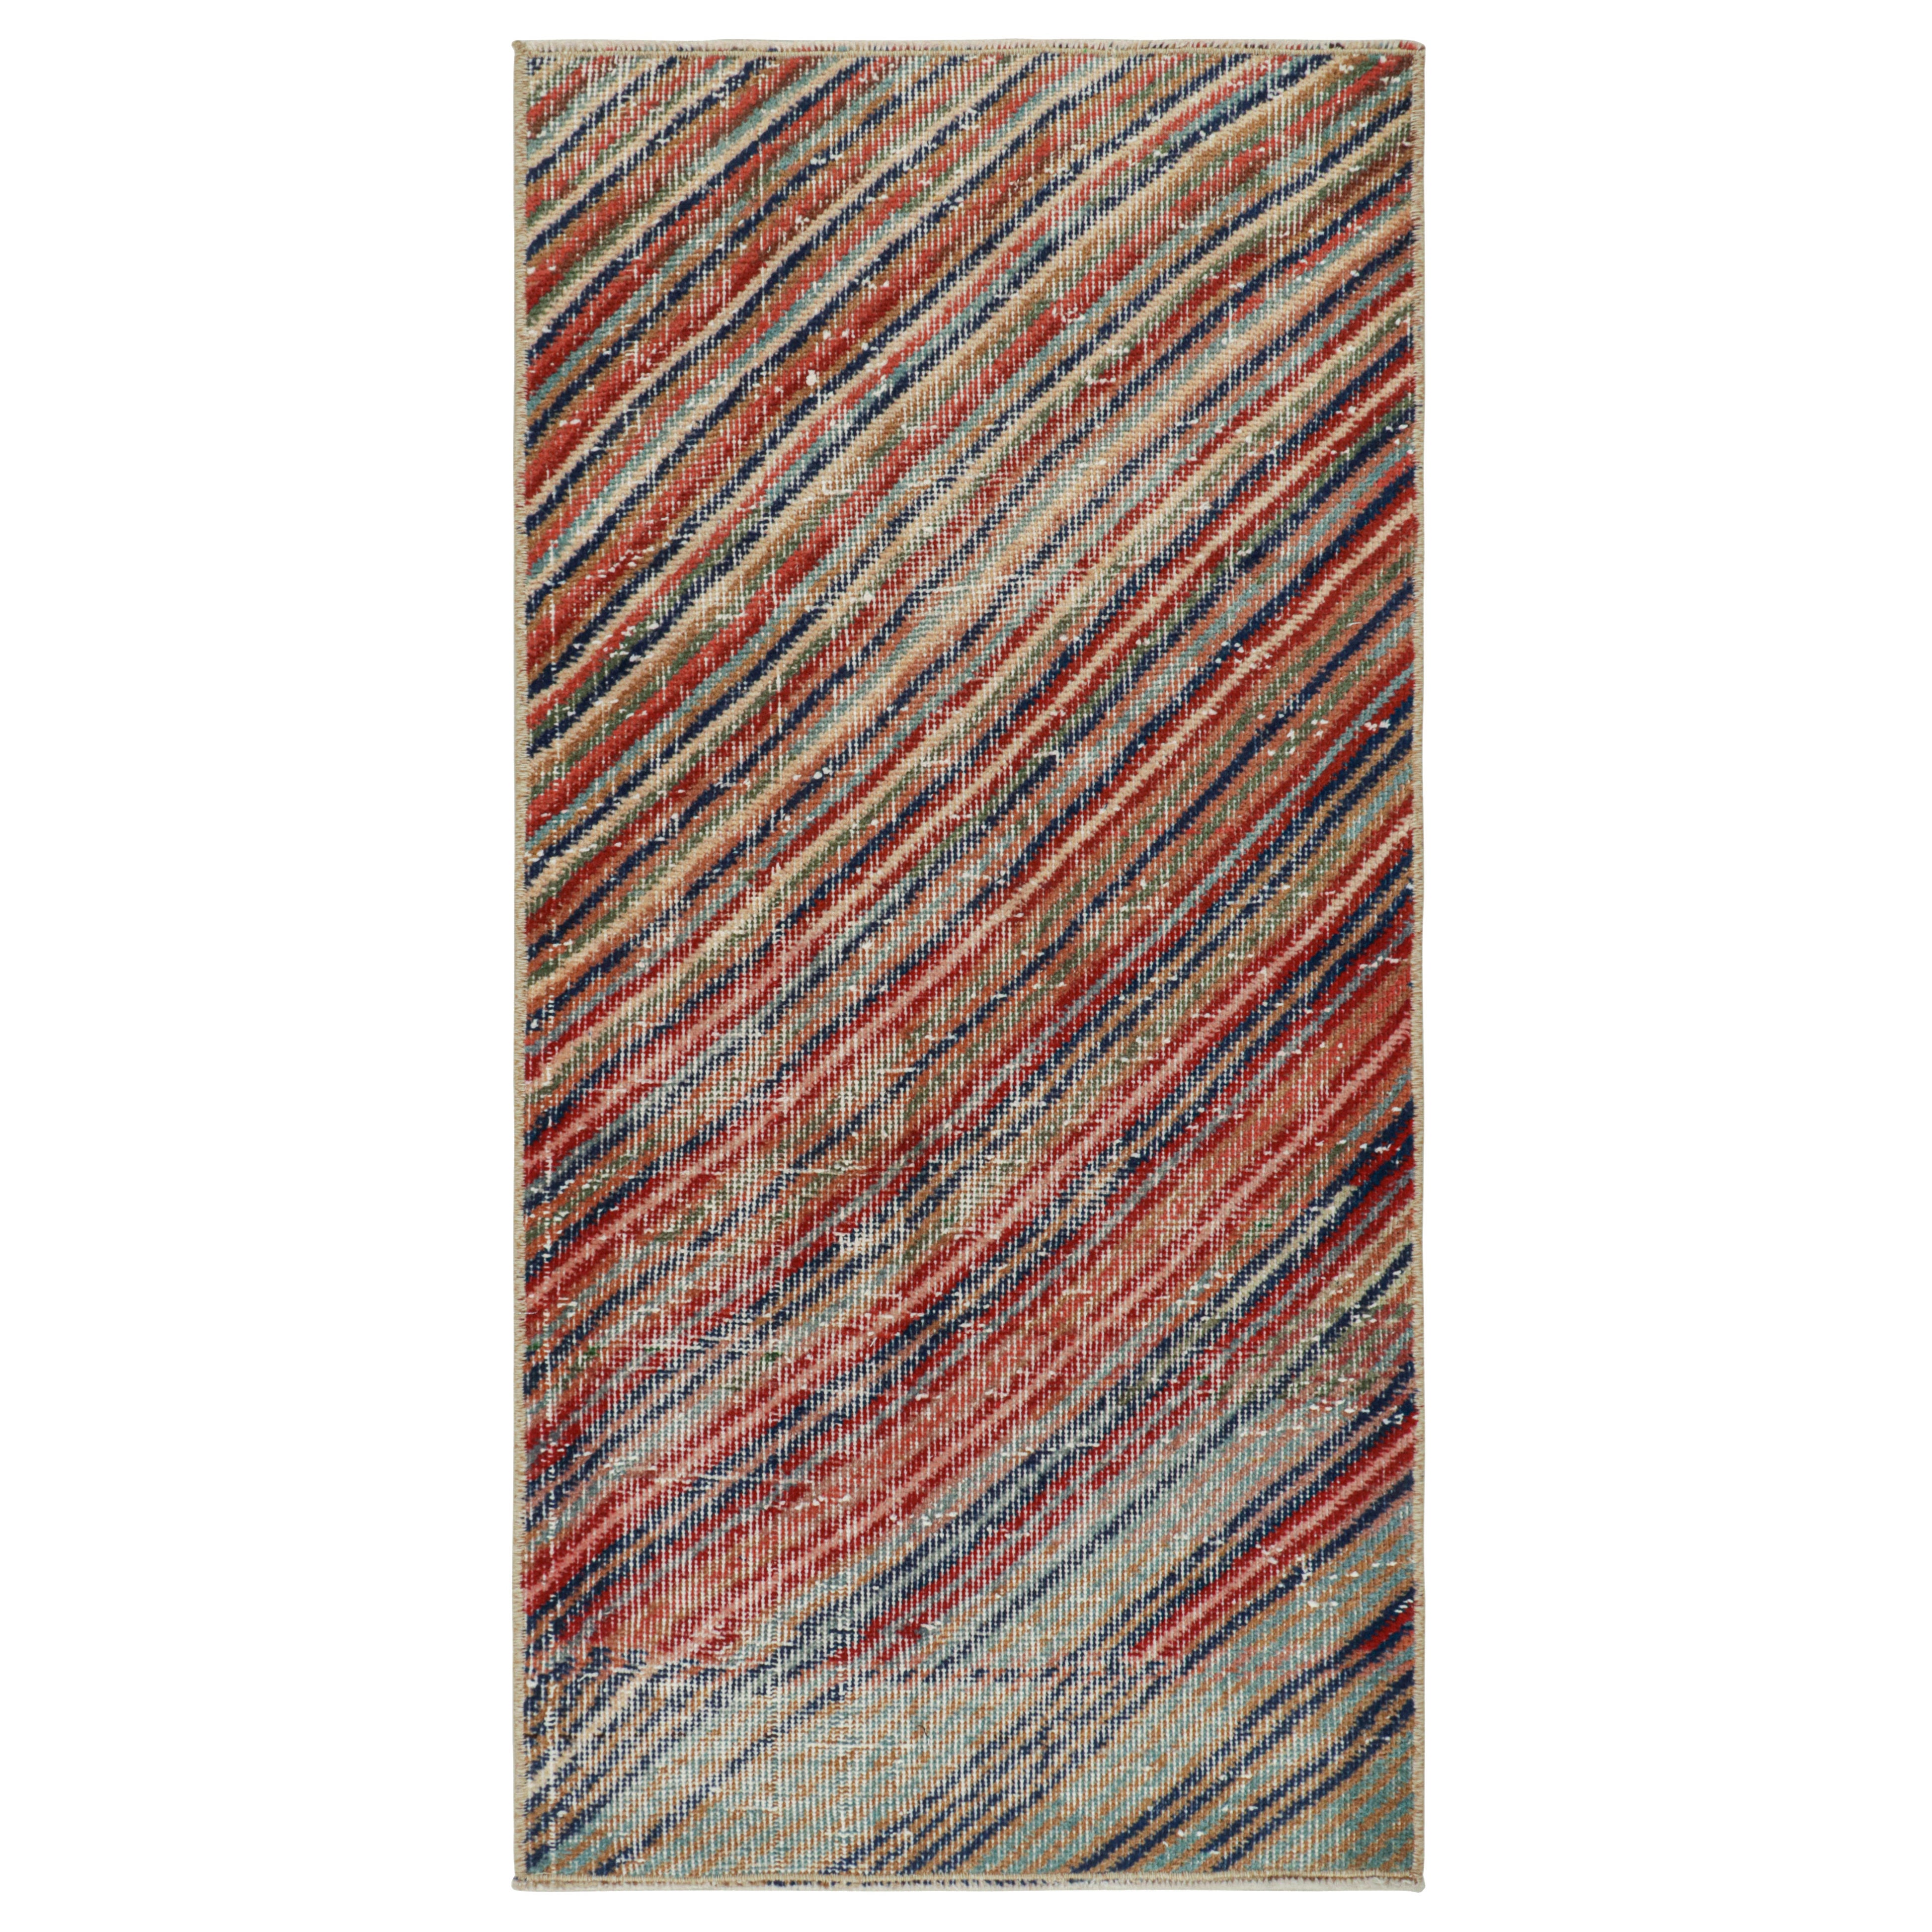 Vintage Zeki Müren Rug with Polychromatic Stripes, by Rug & Kilim